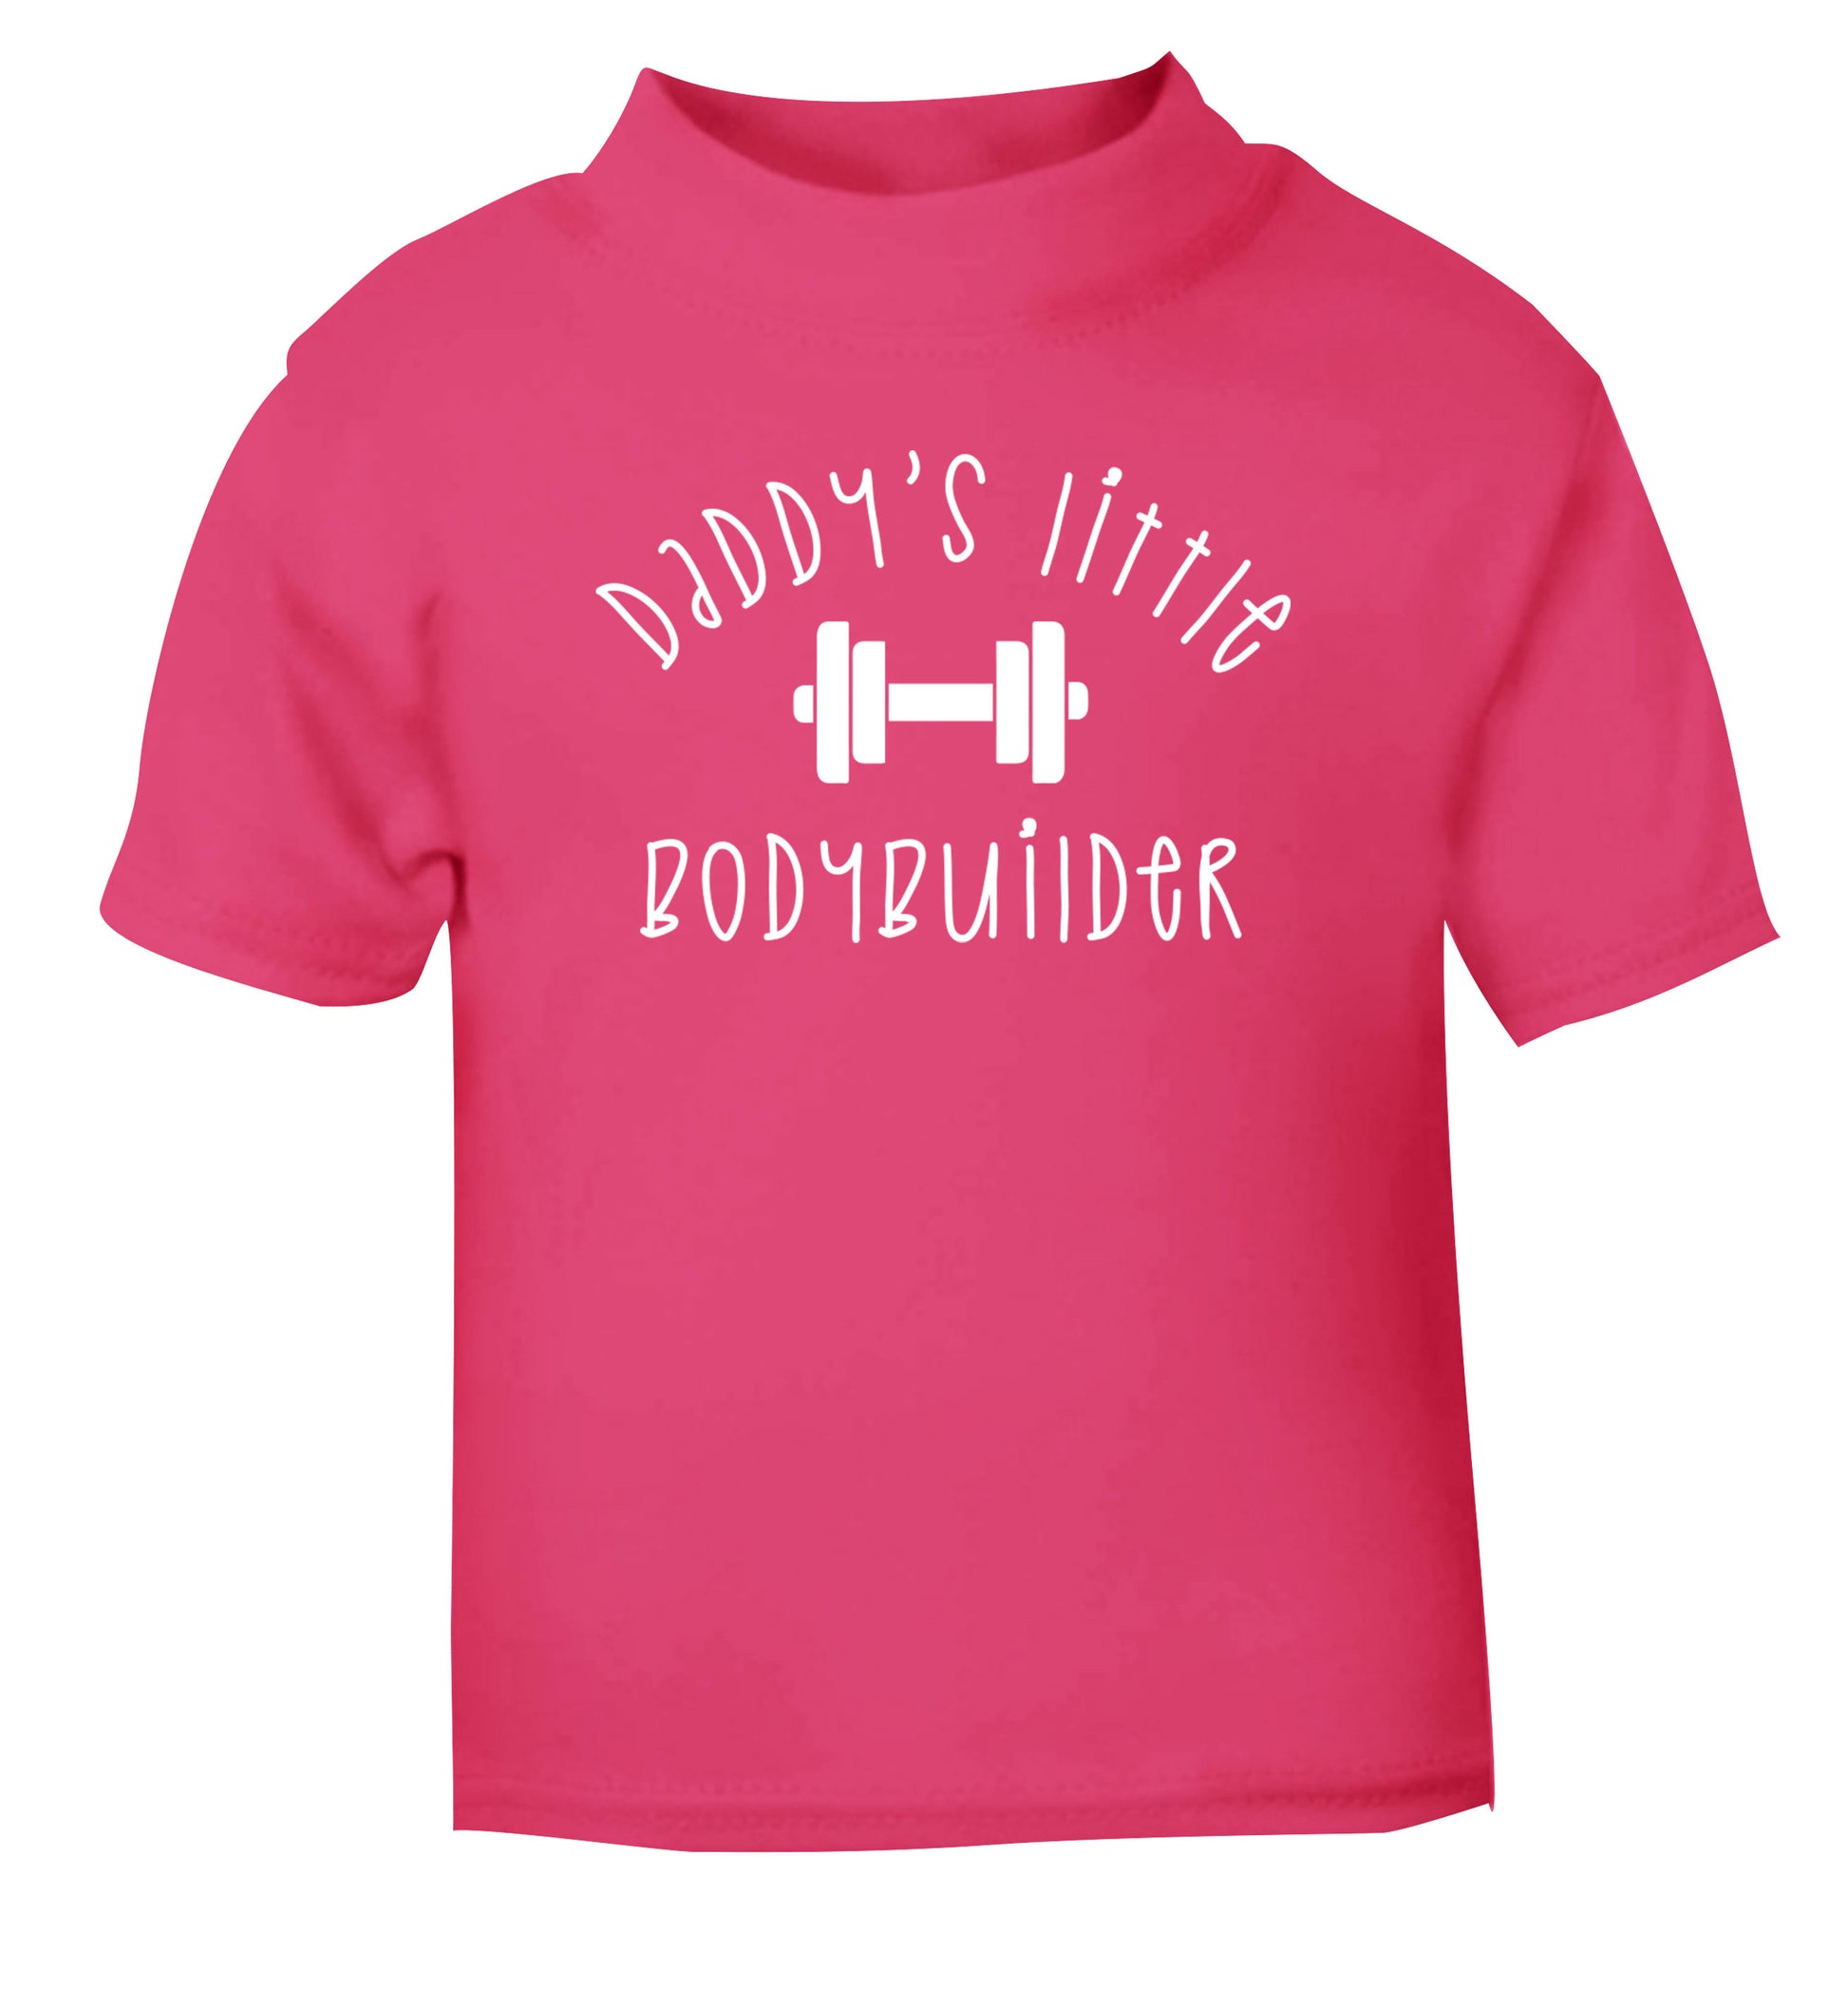 Daddy's little bodybuilder pink Baby Toddler Tshirt 2 Years